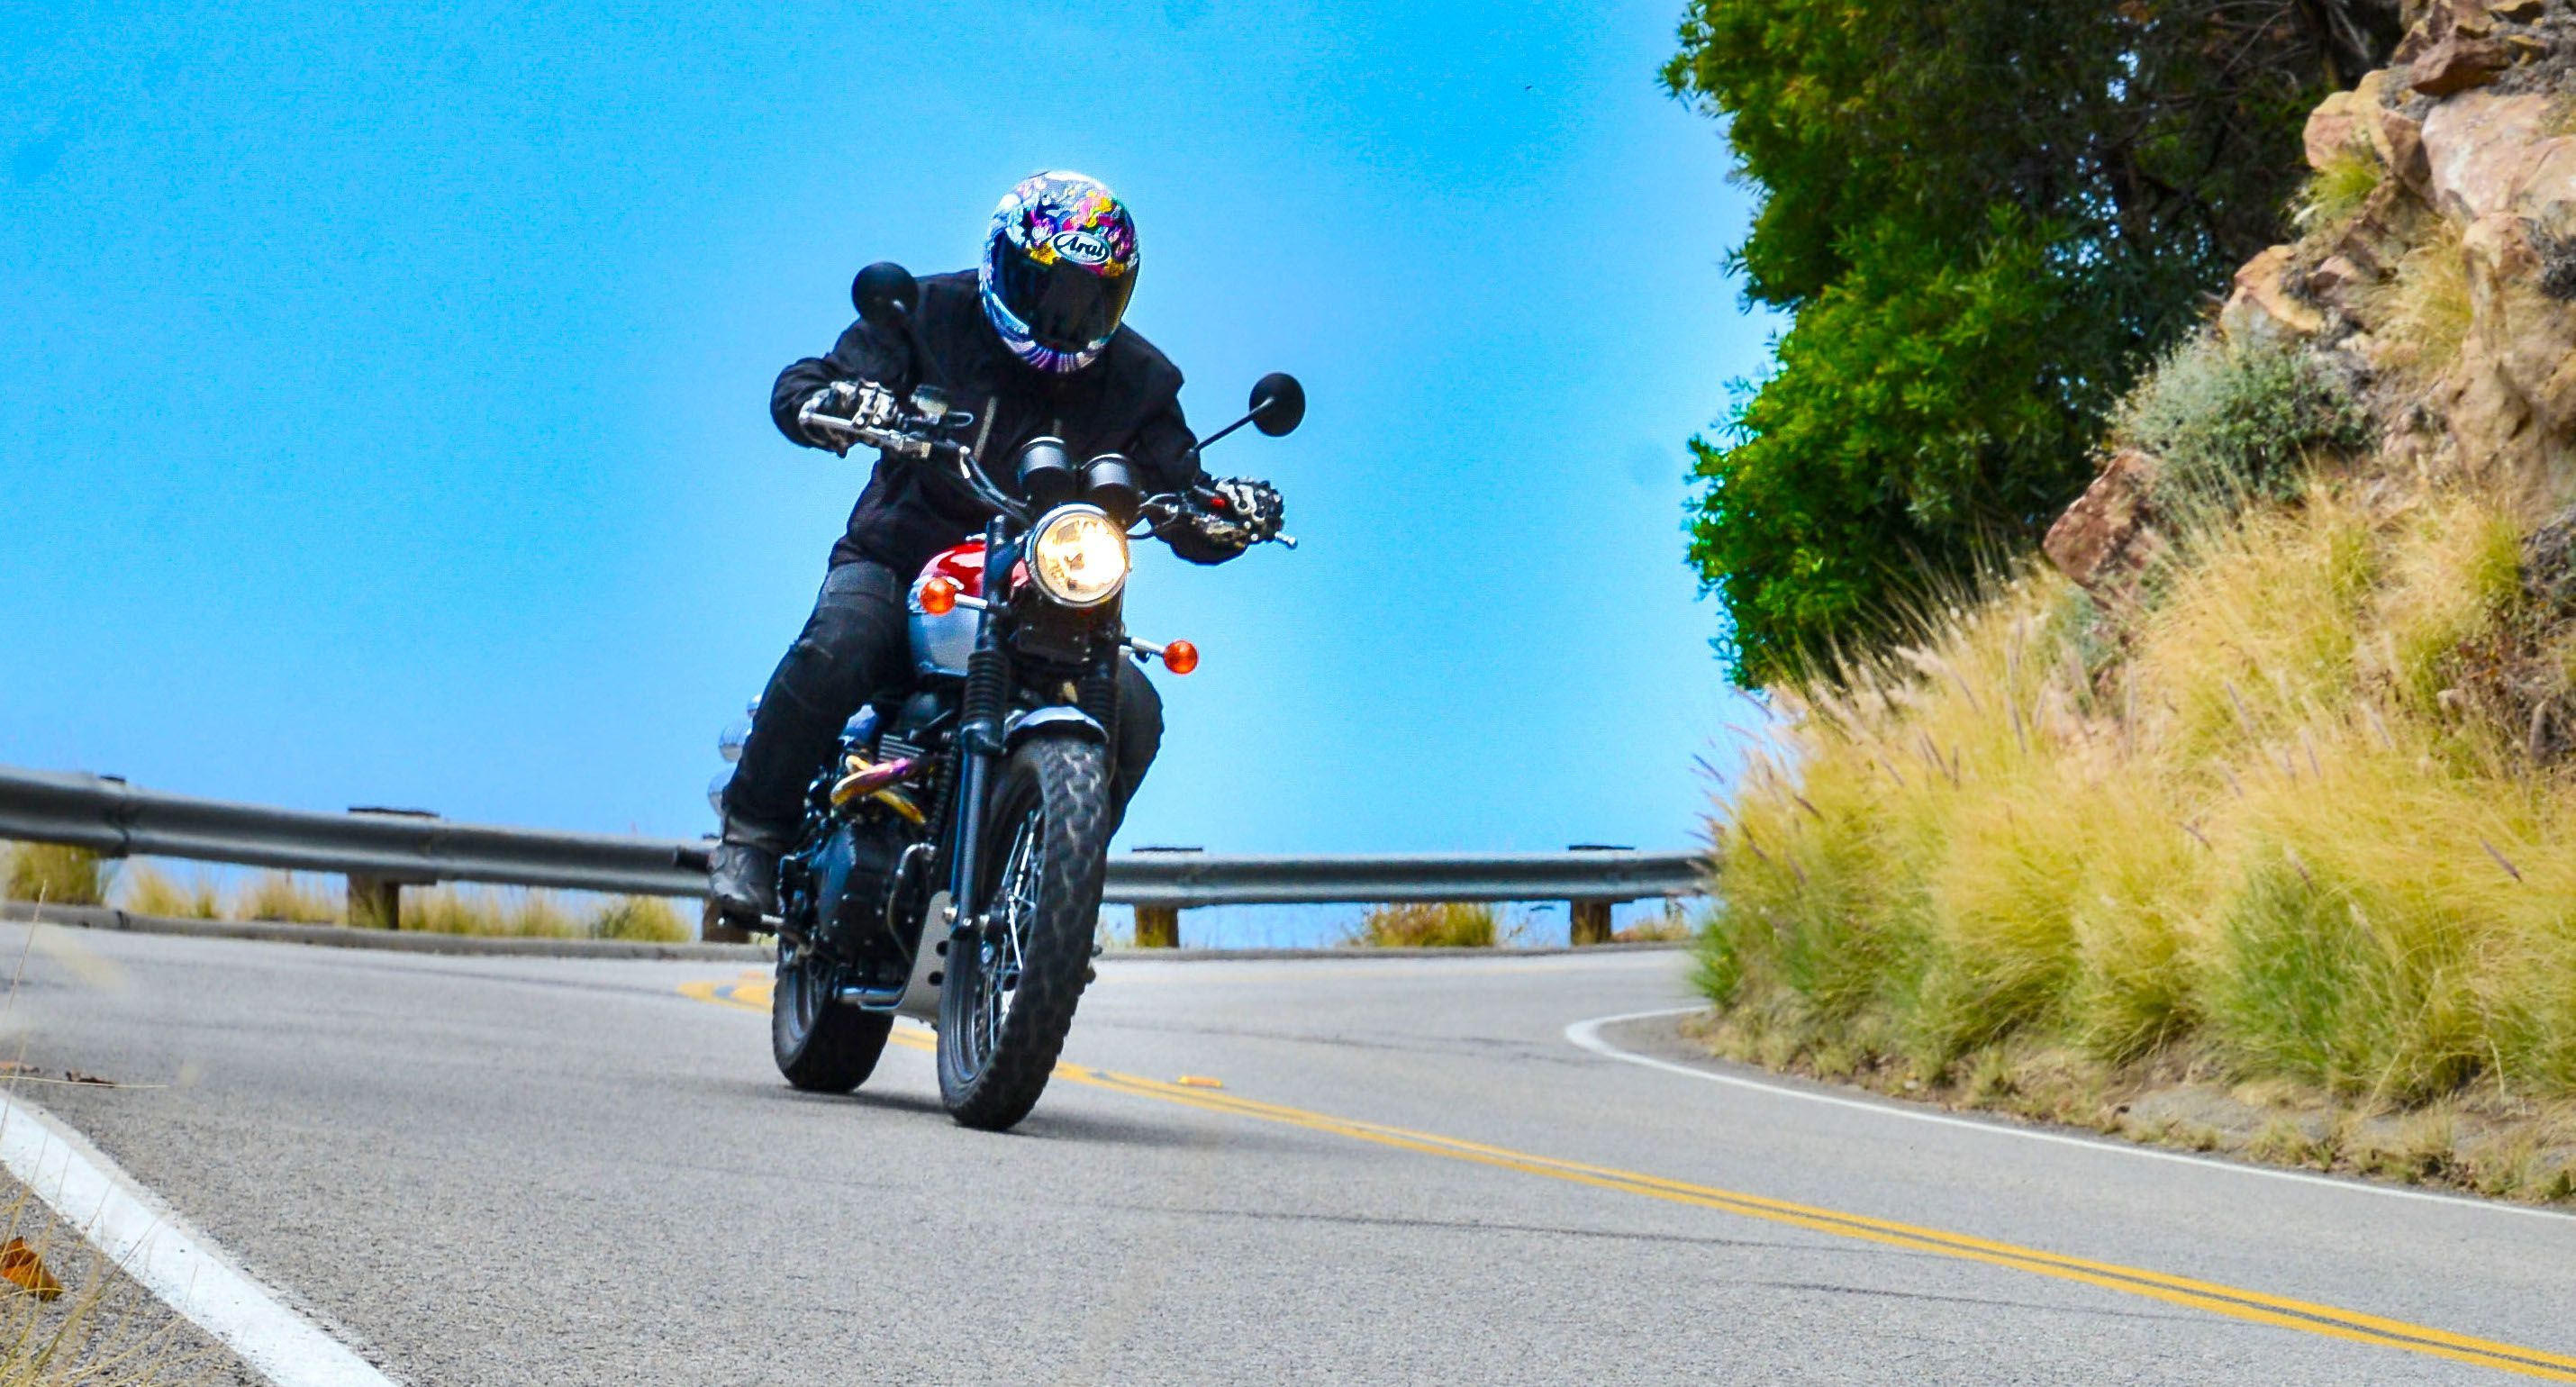 Alex riding the 2015 Triumph Scrambler in Malibu